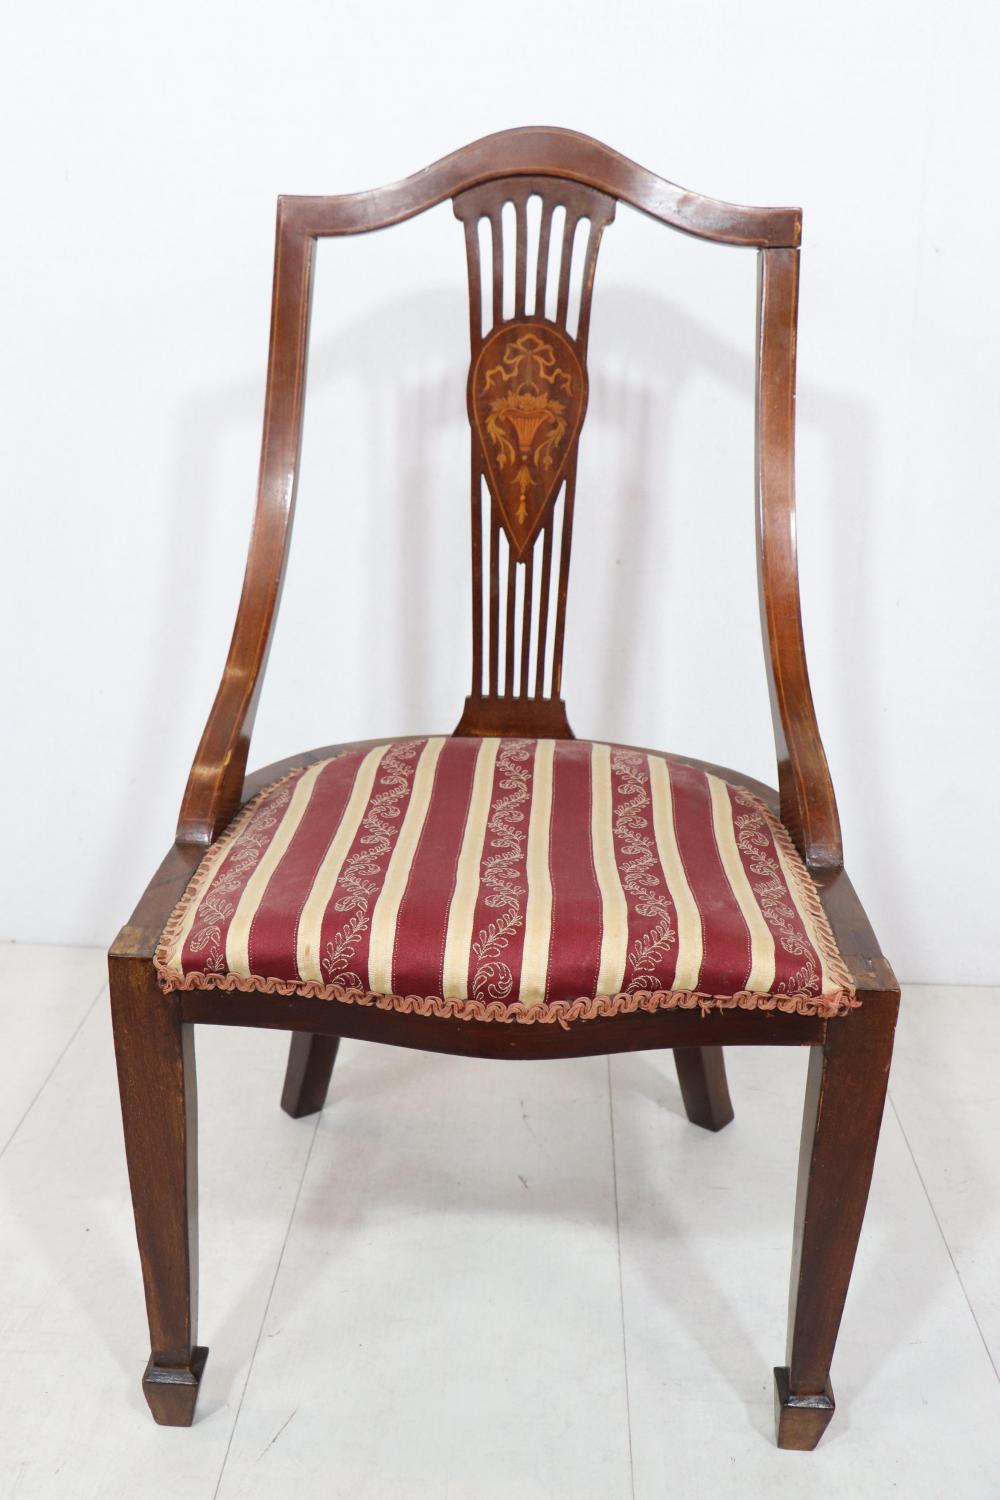 Englischer Single Chair in Mahagoni, mit feinen Intarsien